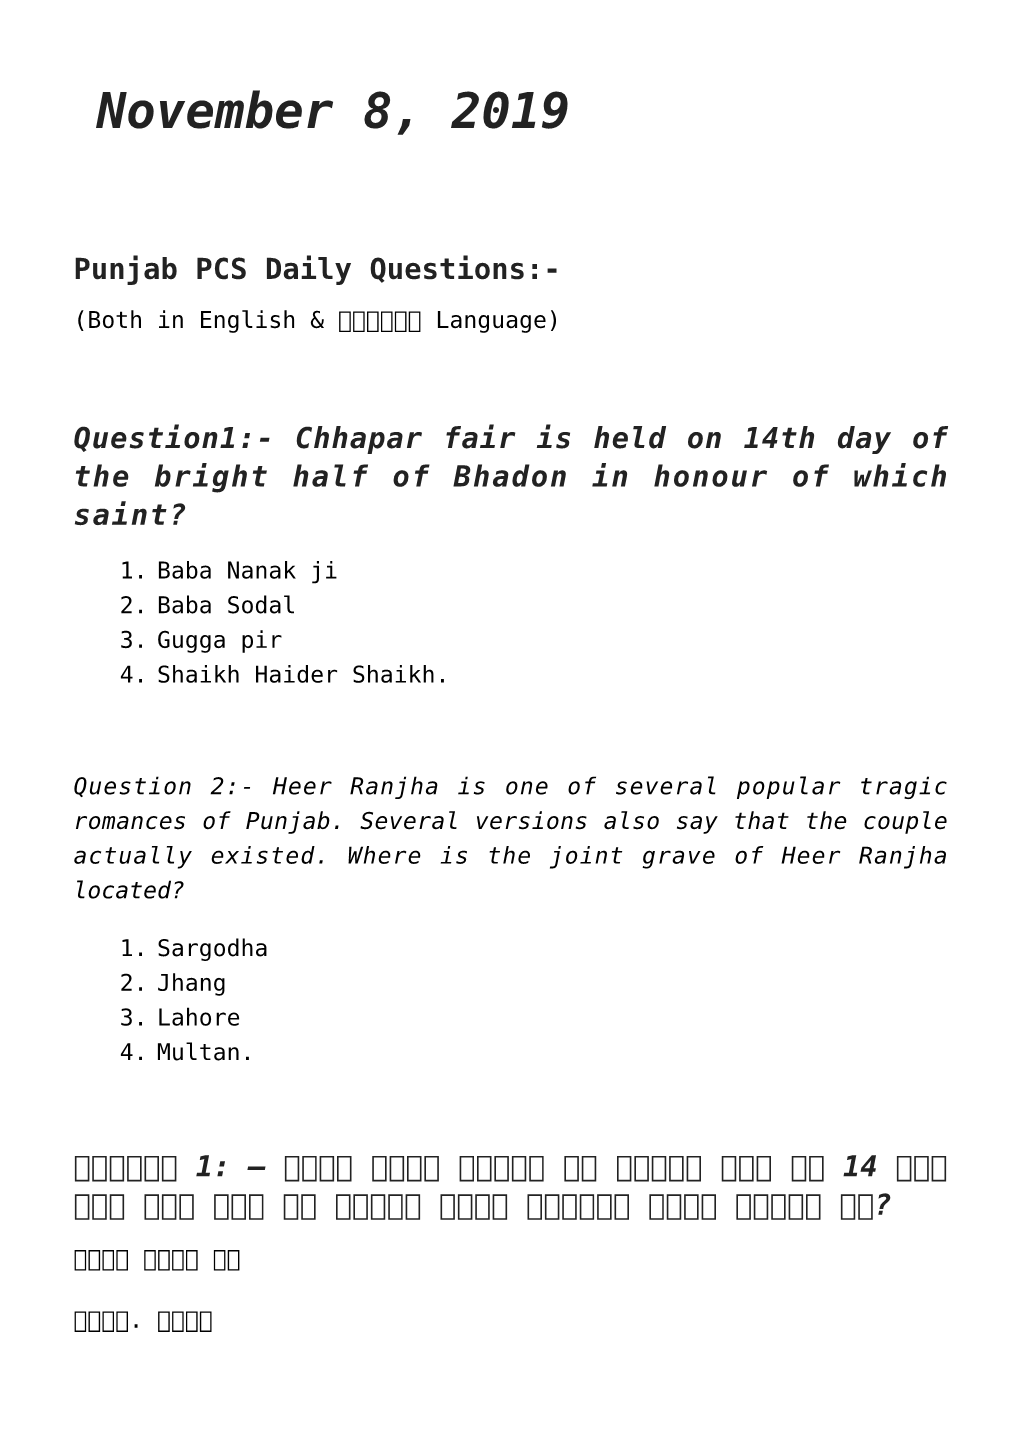 Regular Punjab Quiz